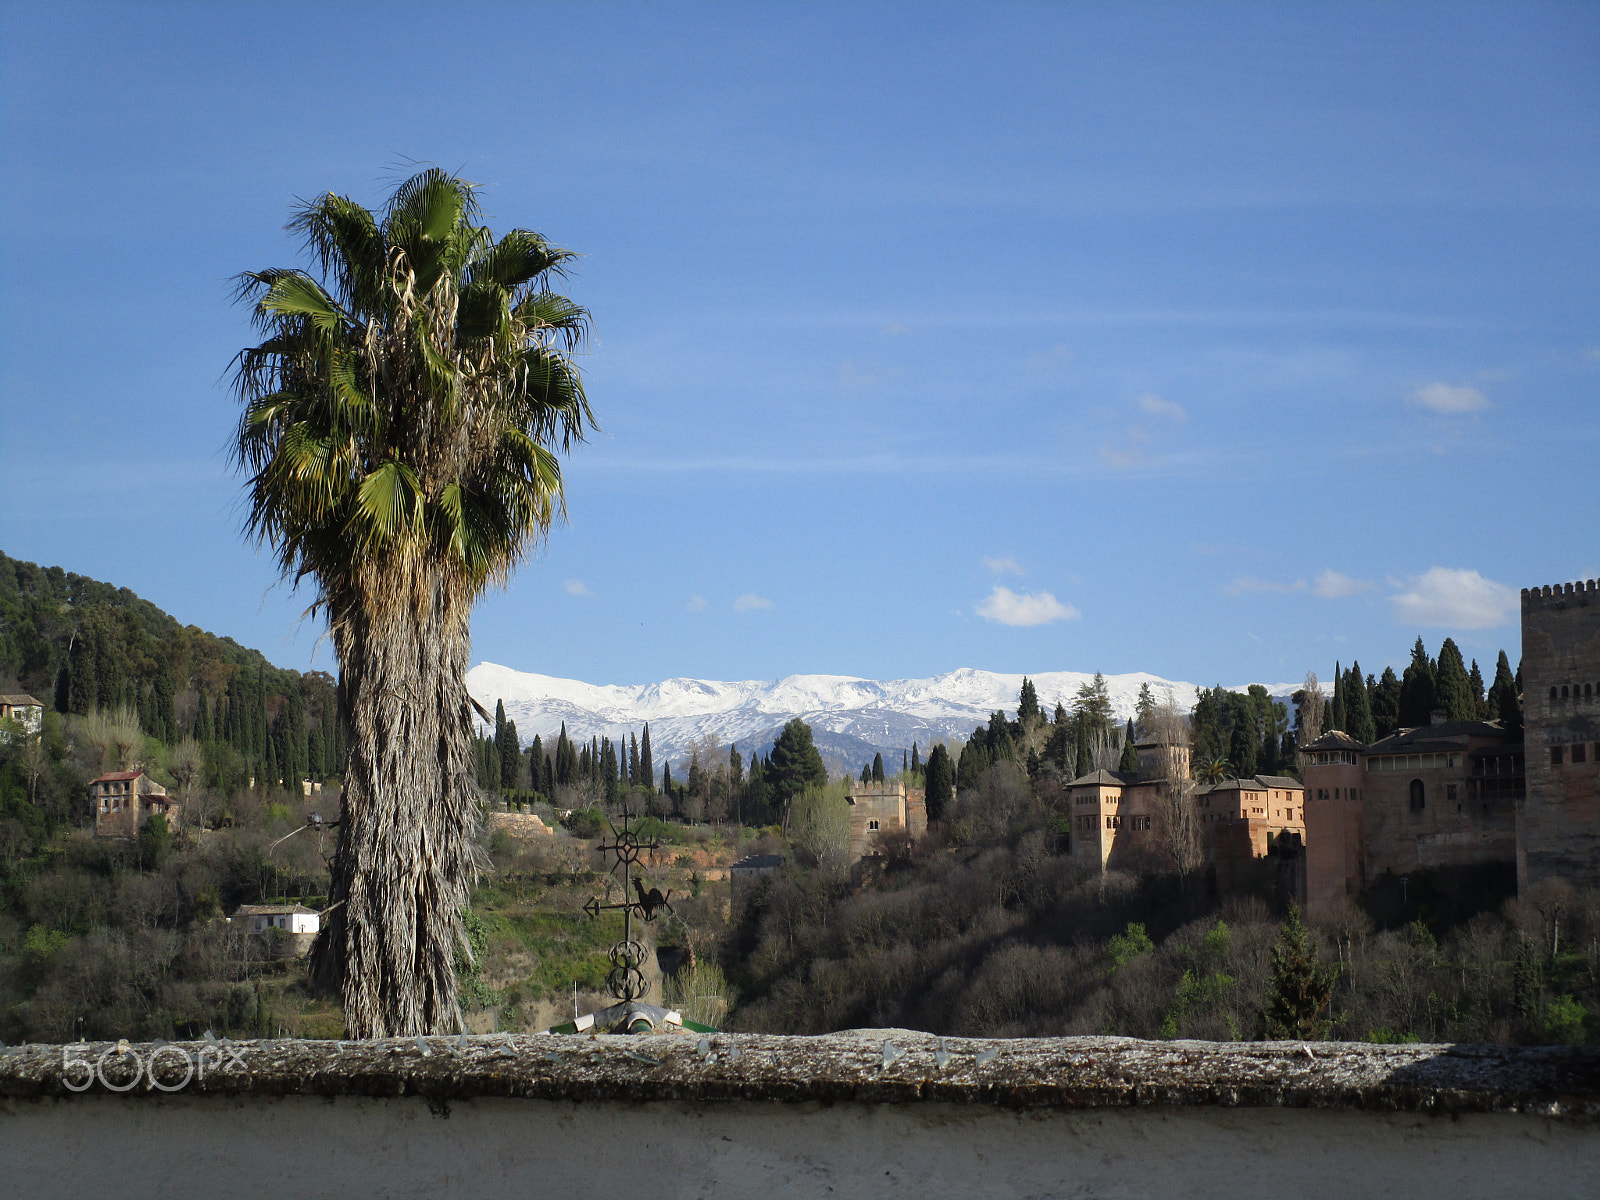 Canon PowerShot ELPH 150 IS (IXUS 155 / IXY 140) sample photo. Granada, españa, abril de 2016 photography